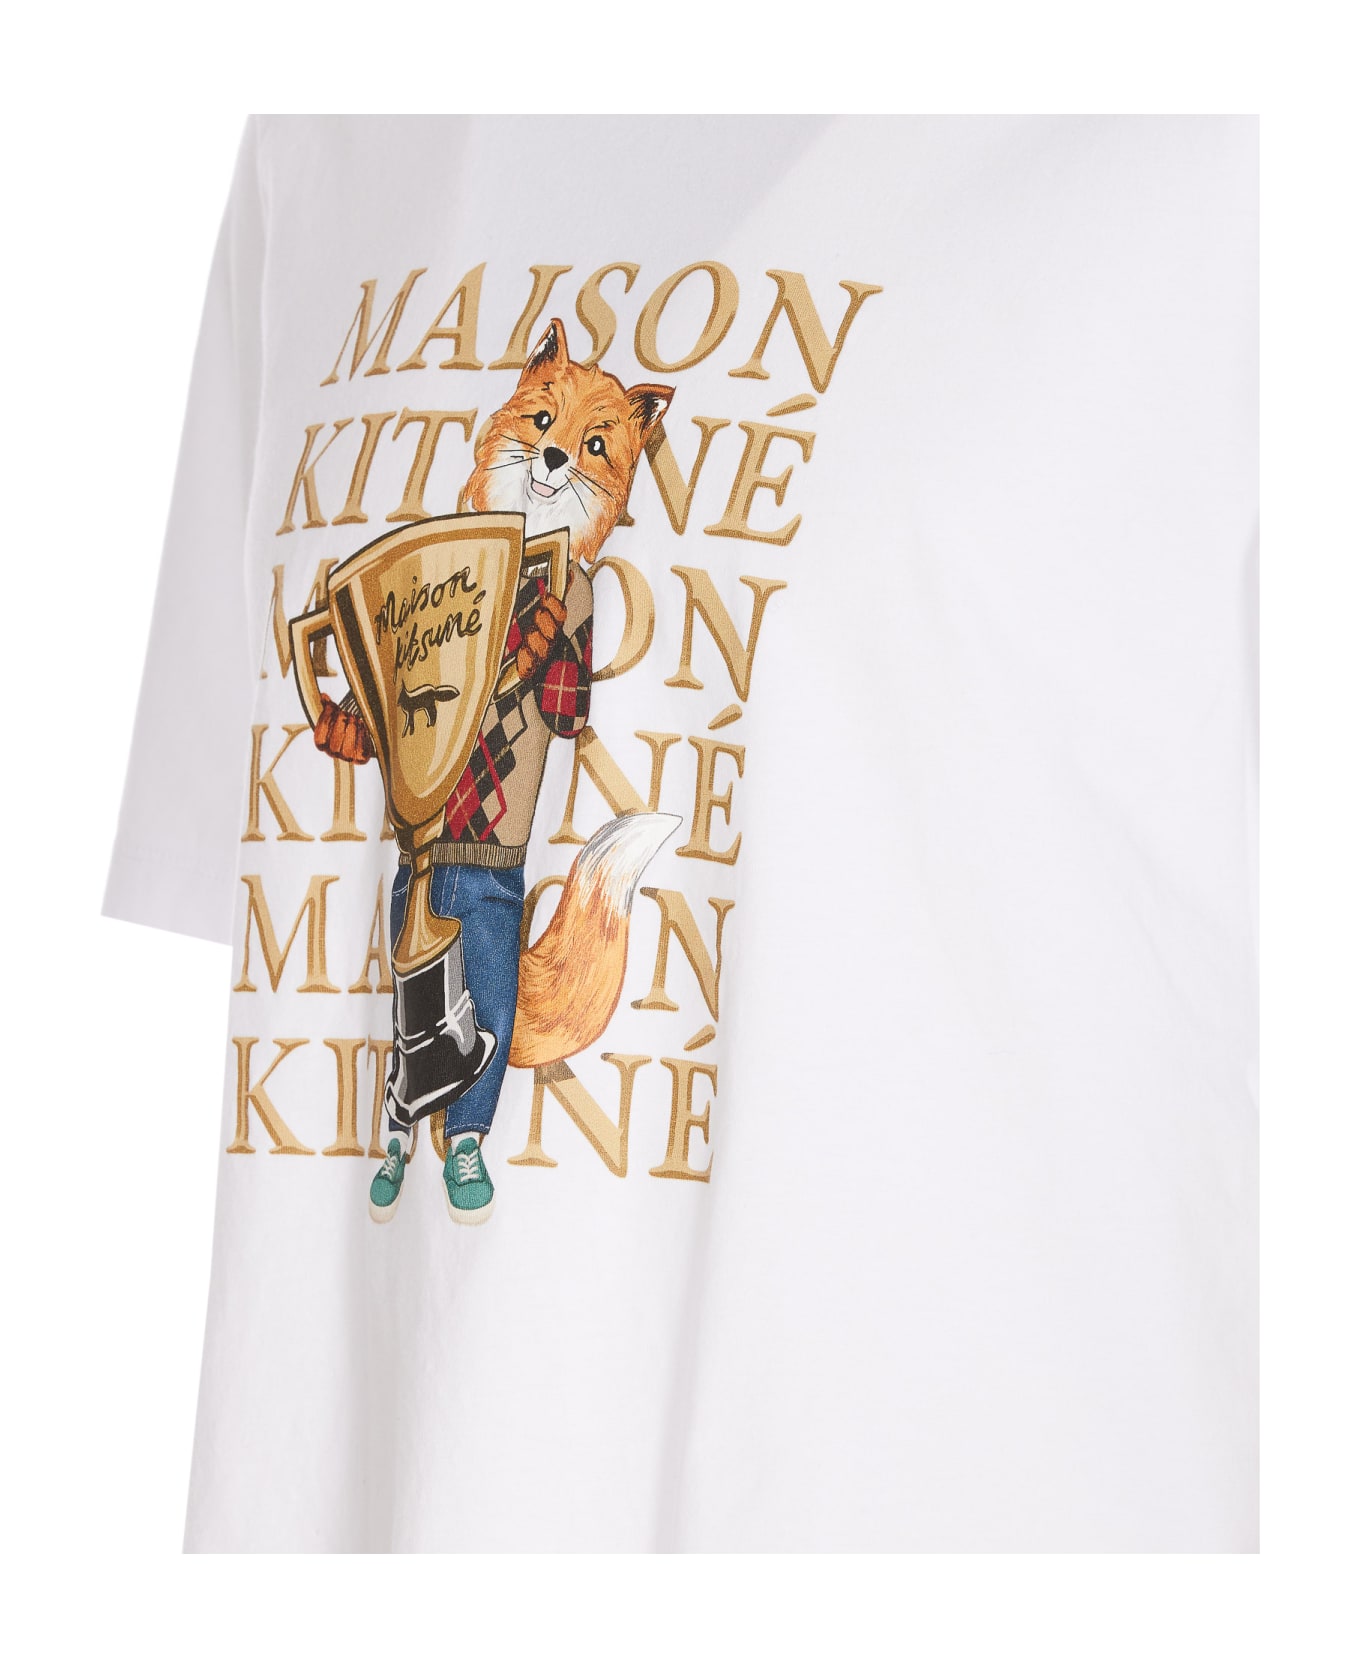 Maison Kitsuné Fox Champion T-shirt - White シャツ